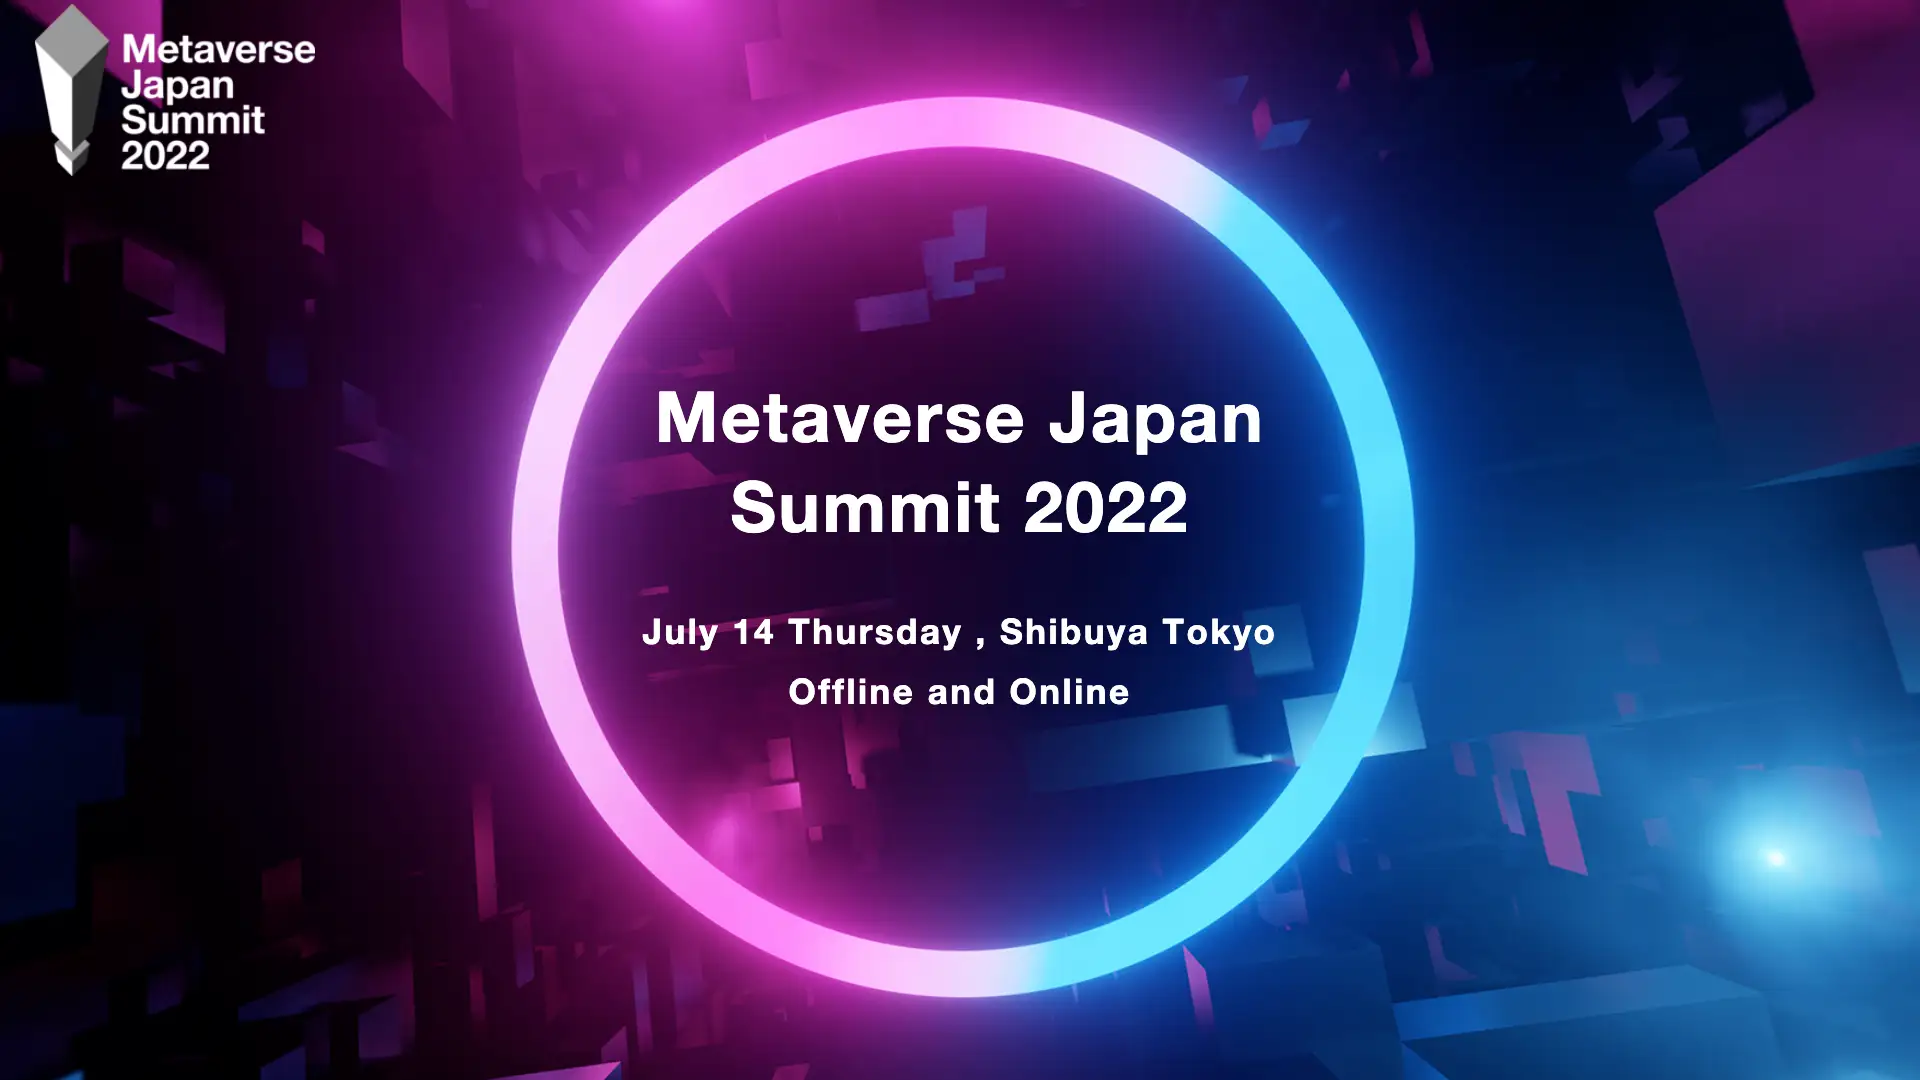 【Metaverse Japan】「Metaverse Japan Summit 2022」7月14日（木）に開催決定